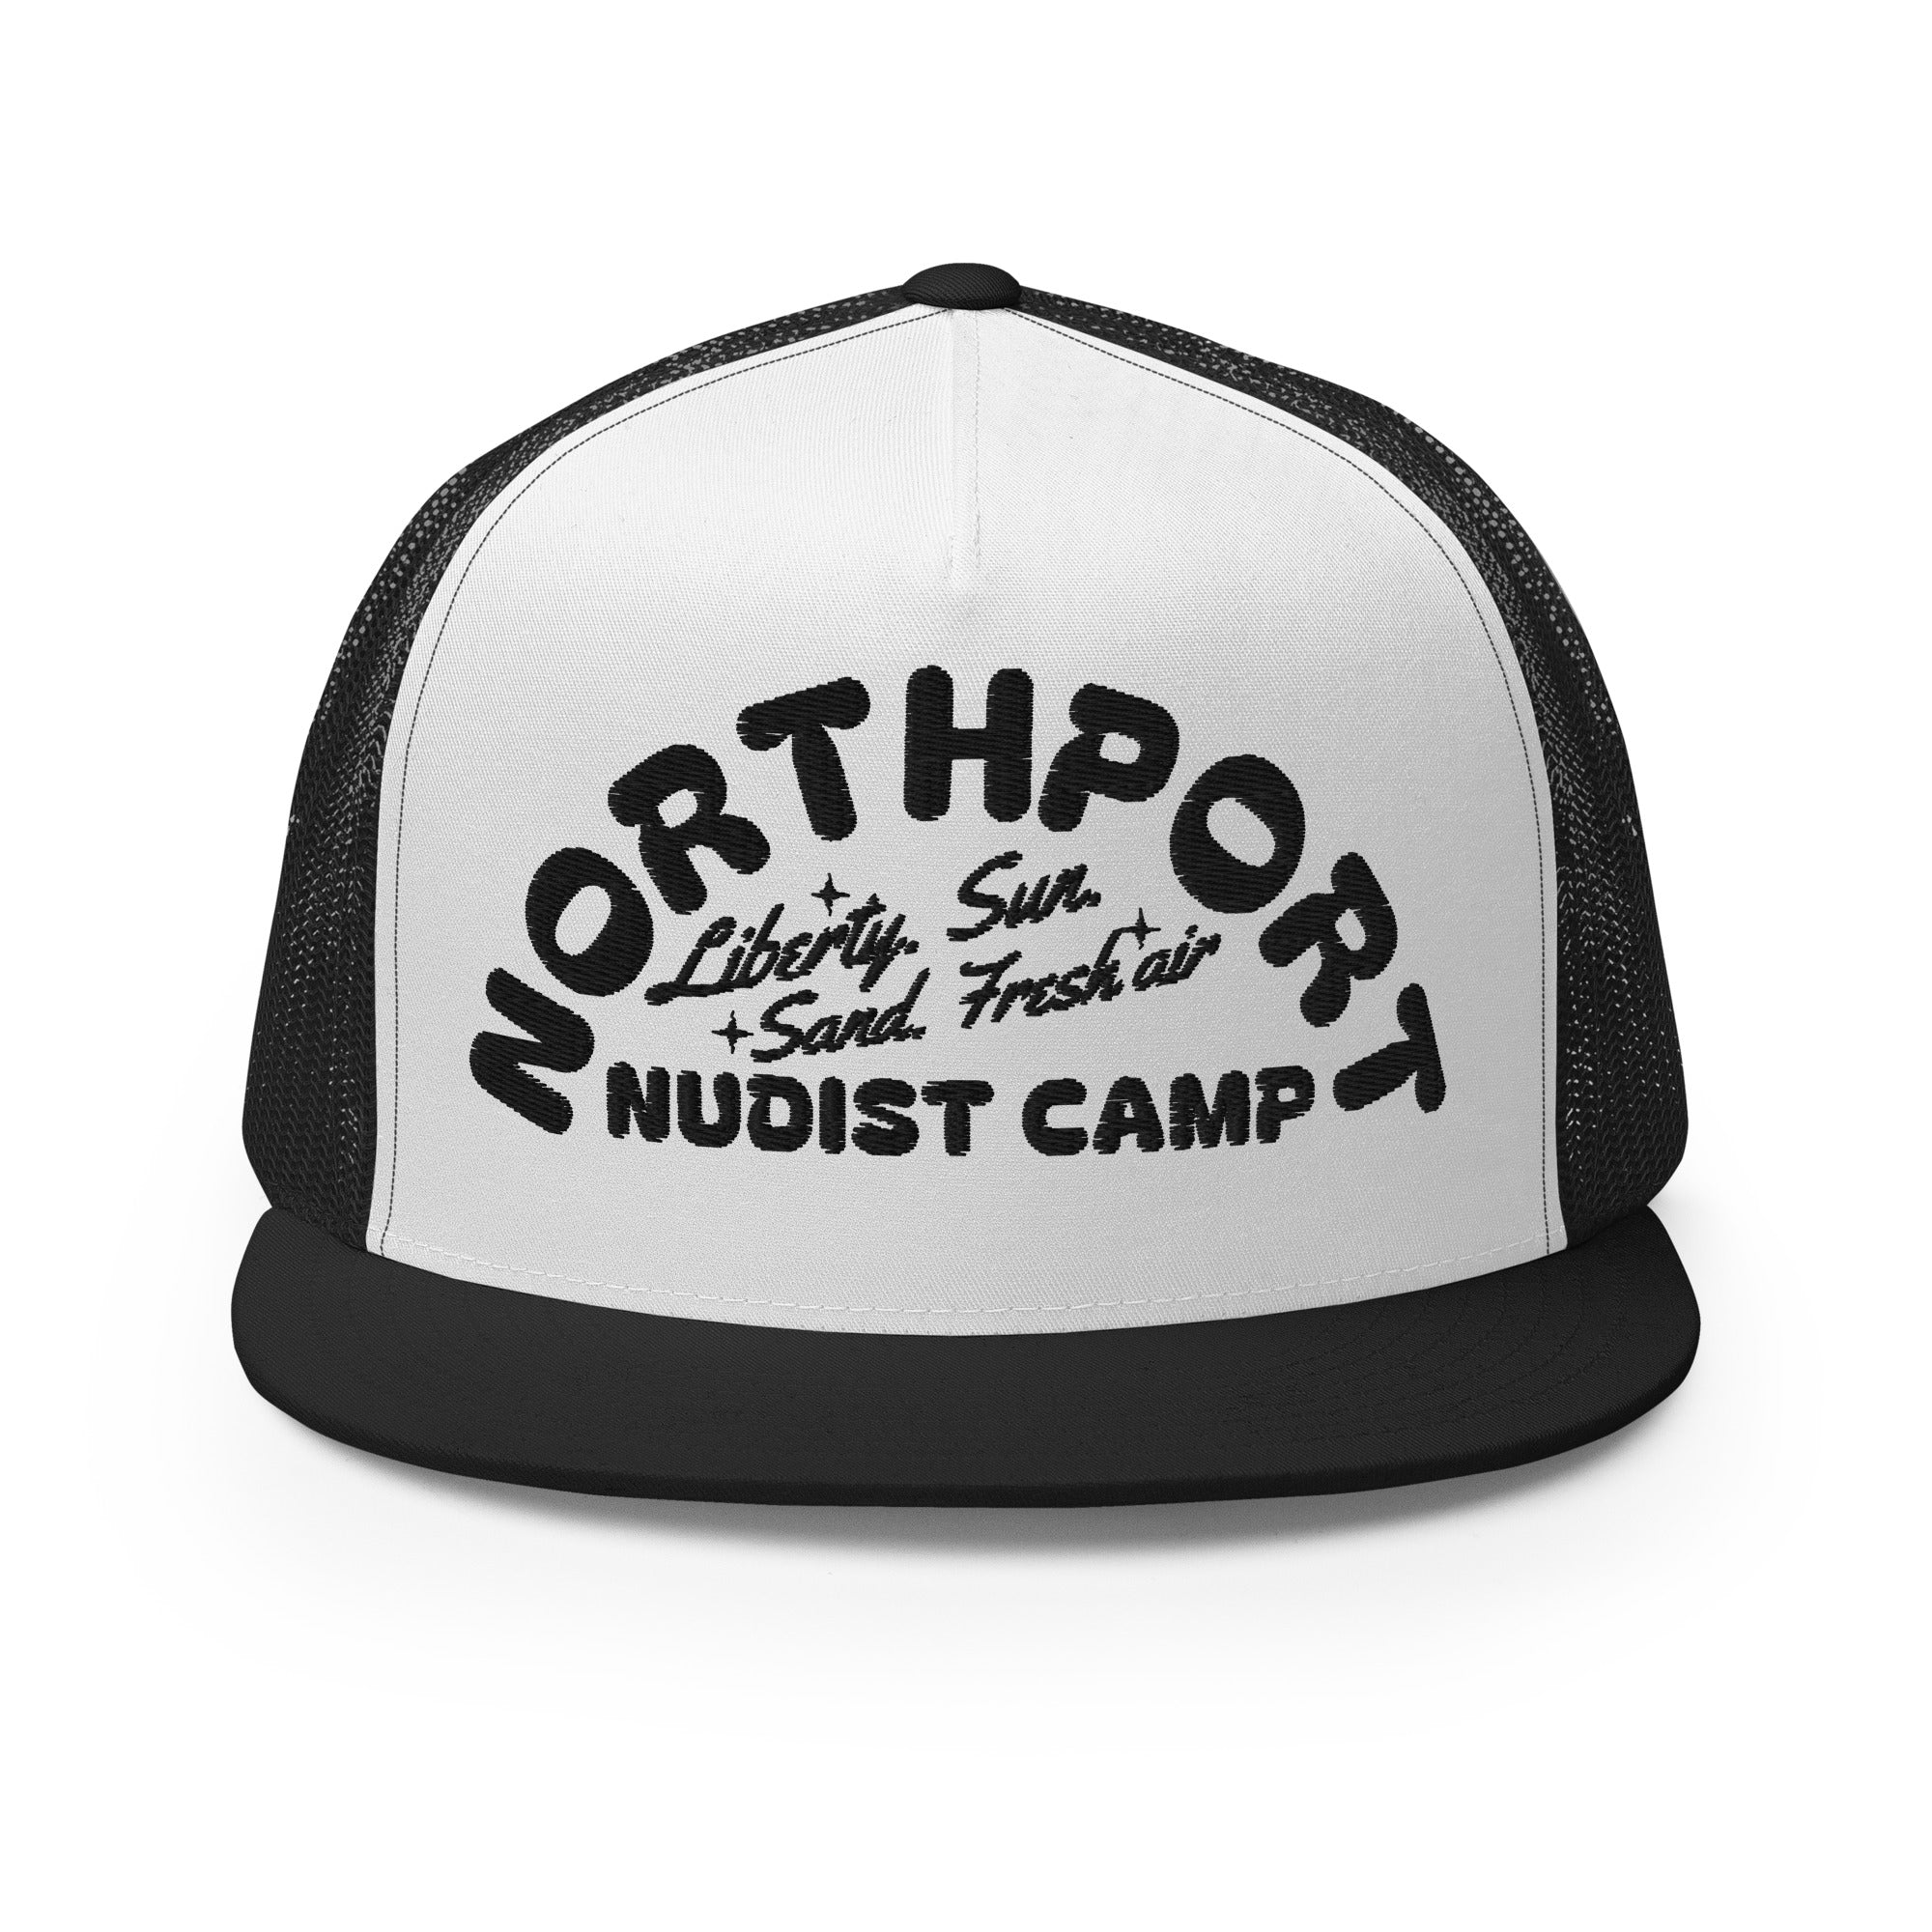 Northport Nudist Camp Trucker Cap - Black  Enjoy Michigan Default Title  